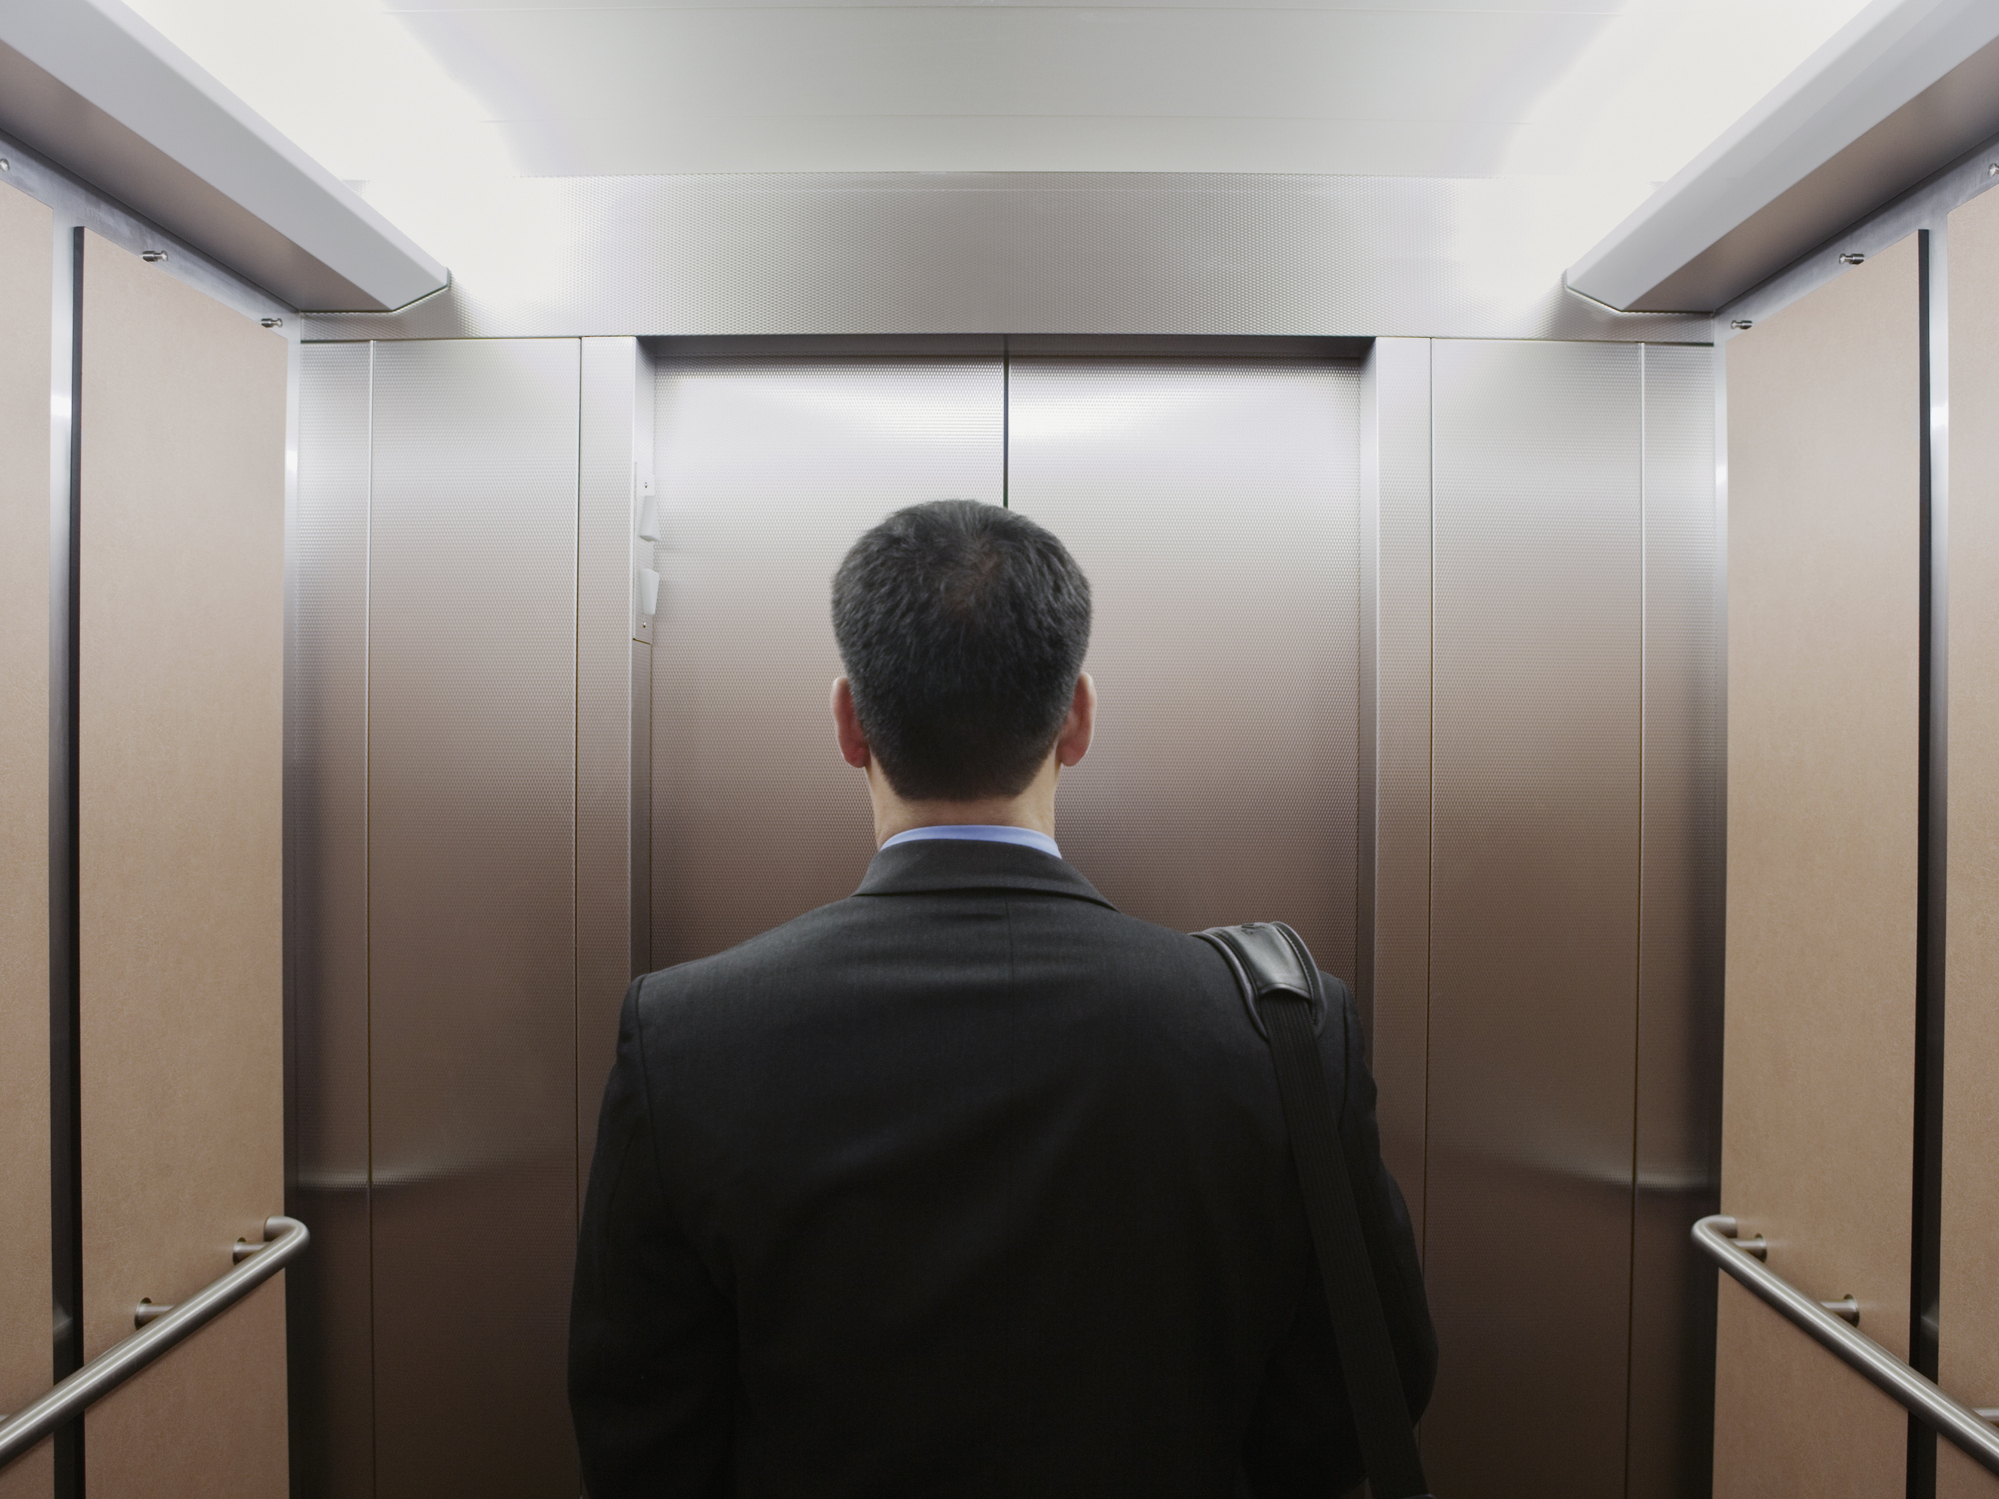 Qué significa soñarse dentro de un ascensor que sube, baja o se mantiene quieto: aislamiento, preocupaciones, aspiraciones, metas y otros significados